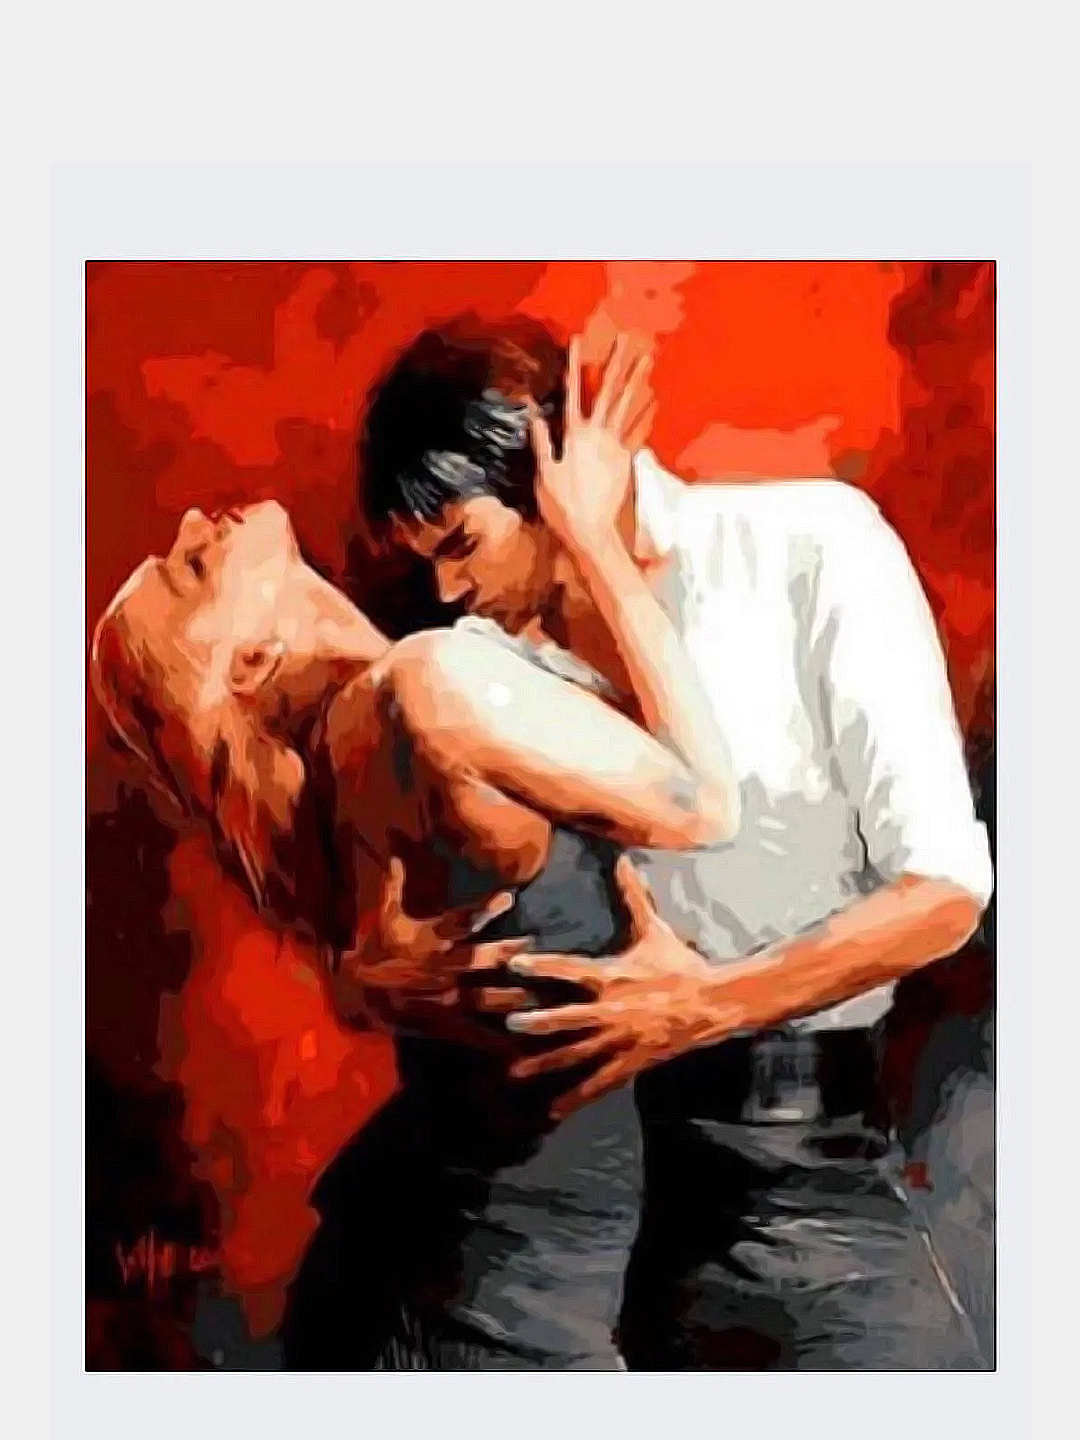 Страстные названия. Виллем Хаенрайтс художник танго. Художник Willem Haenraets танго. Страсть живопись. Картина "любовь".